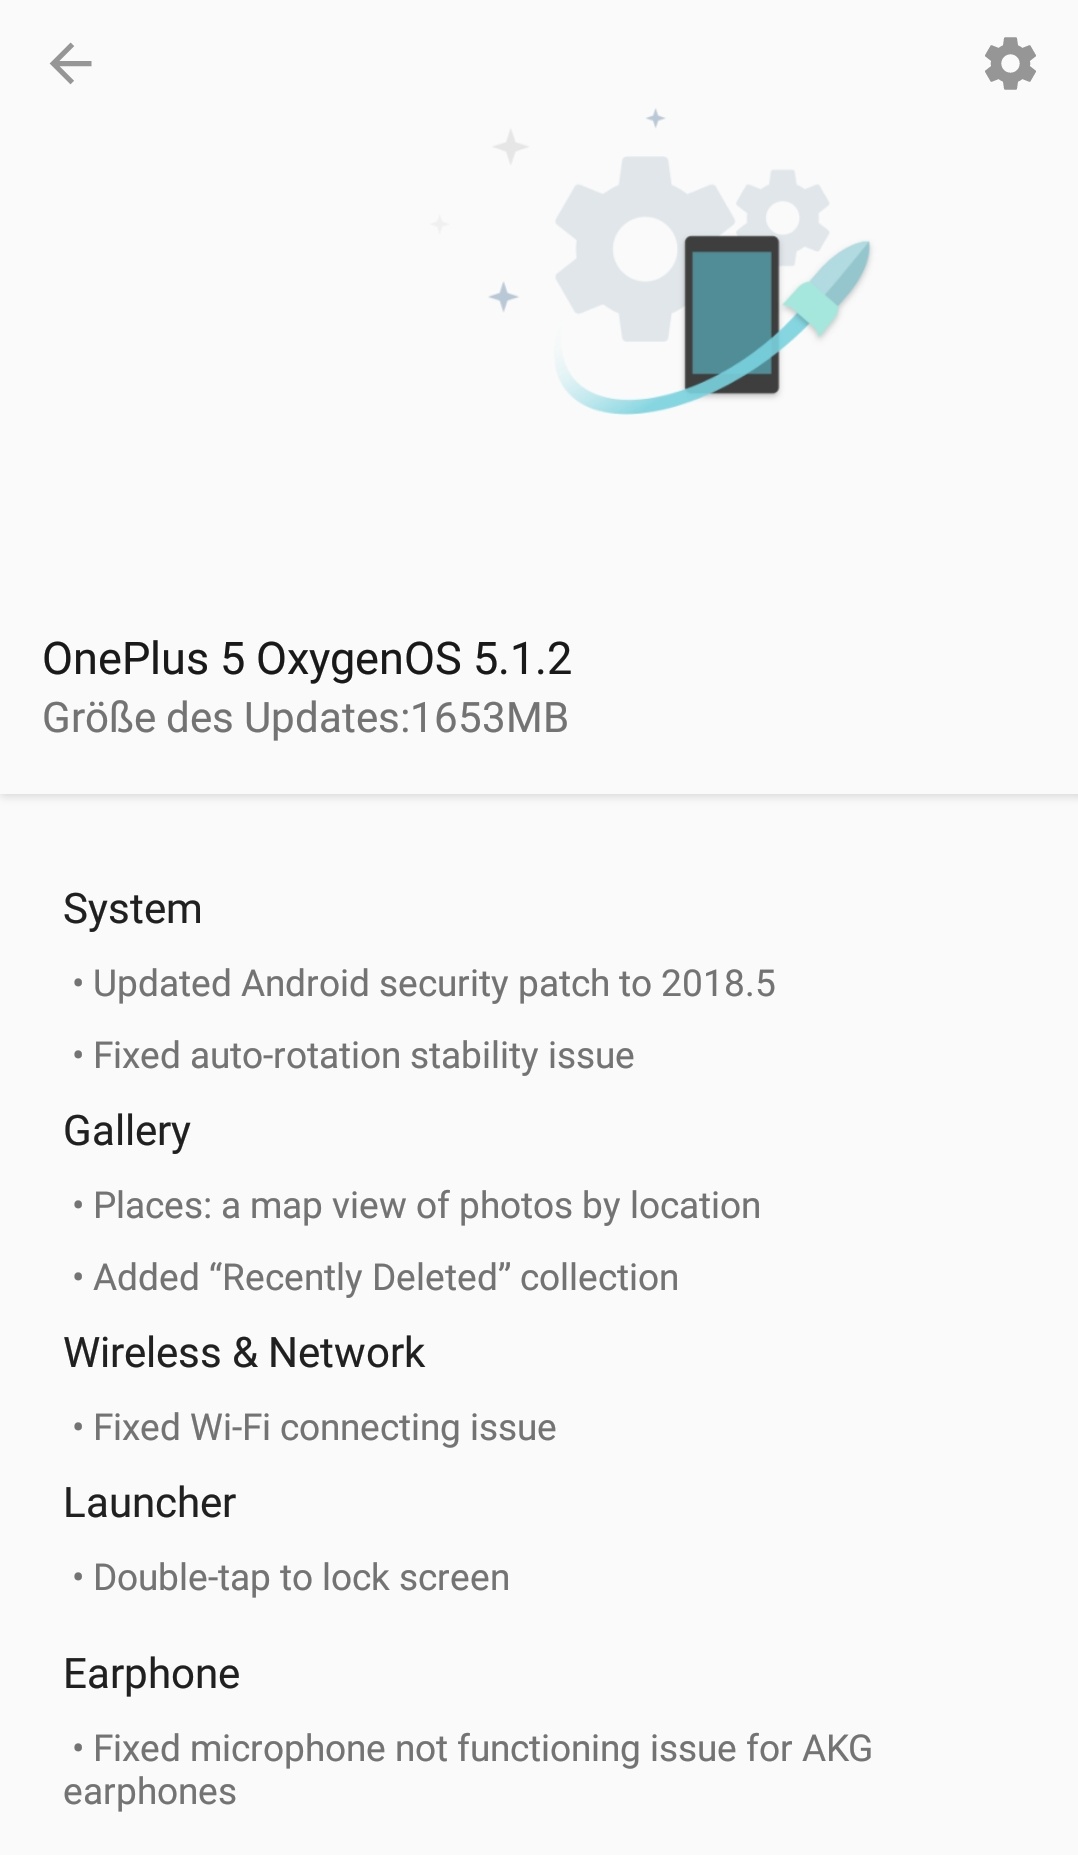 Oneplus 5 - OxygenOS 5.1.2